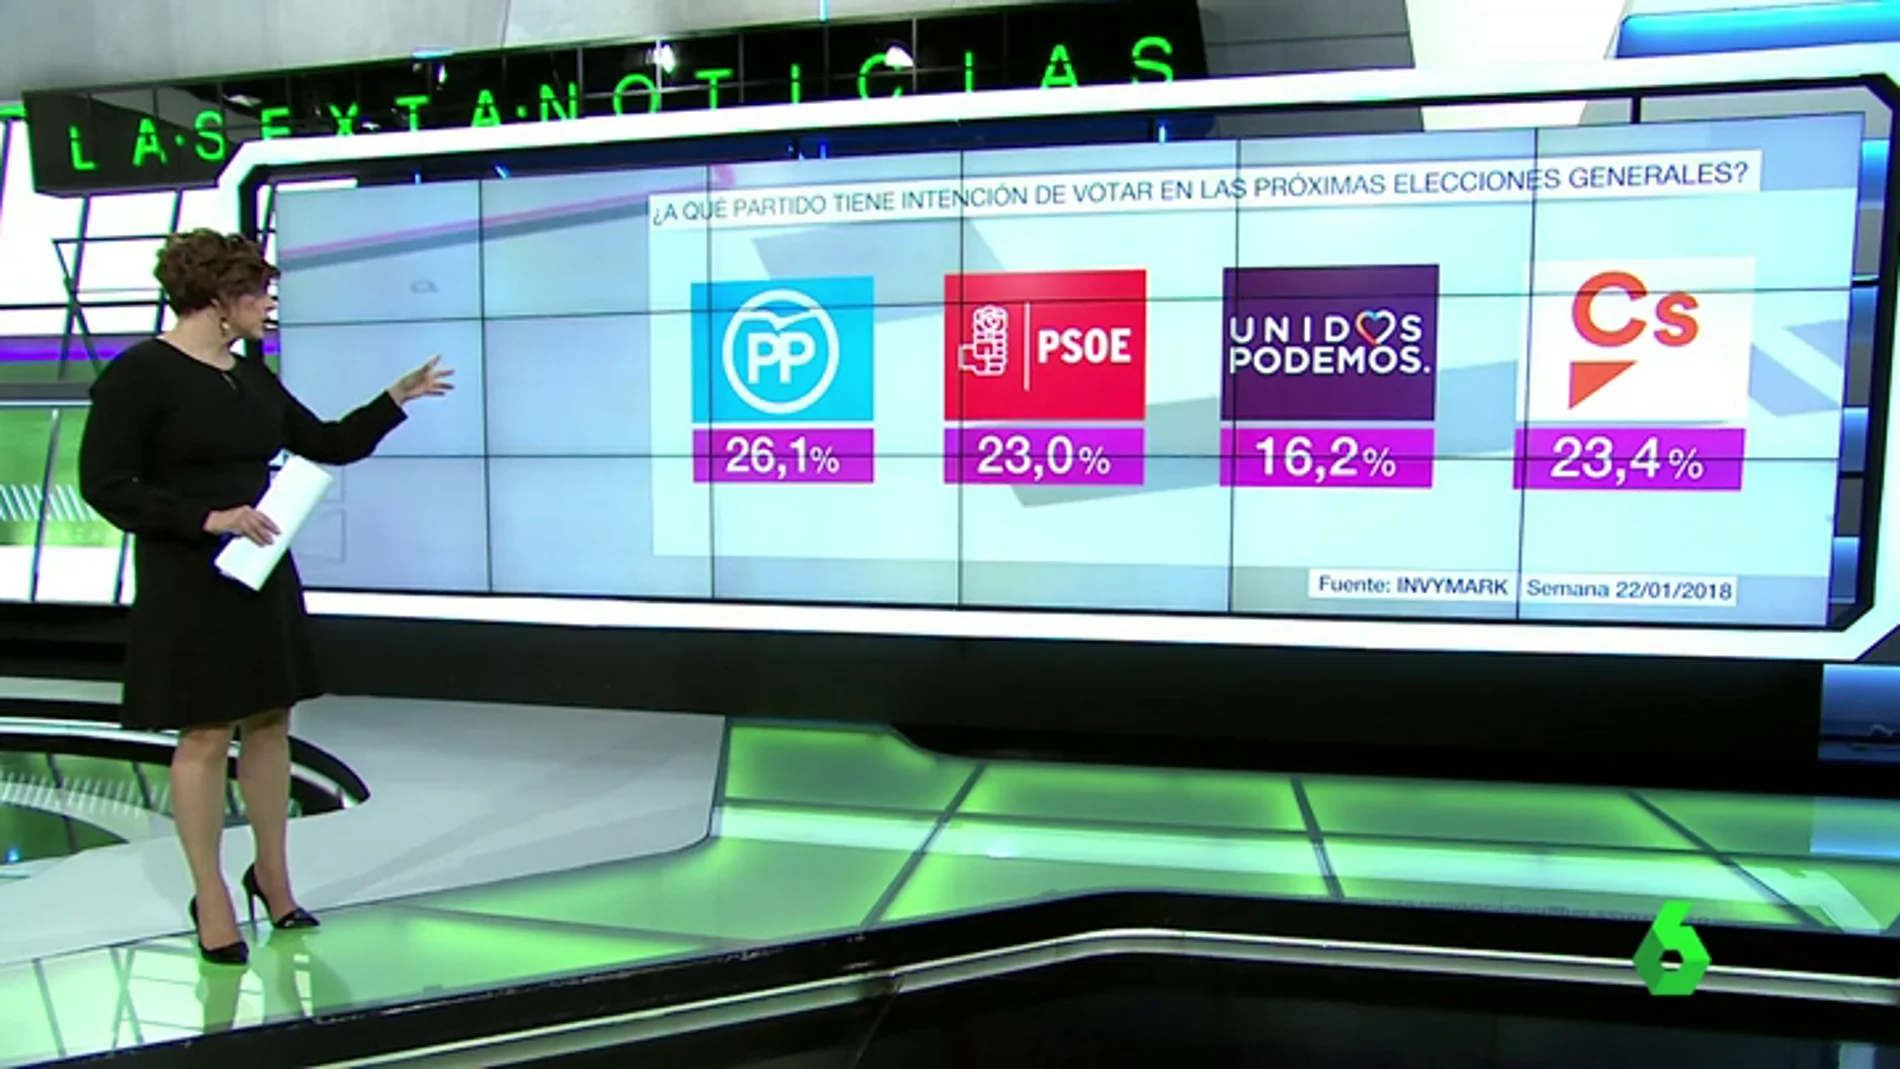 El PP ganaría las elecciones generales con el 26,1% mientras Ciudadanos se sitúa como segunda fuerza política